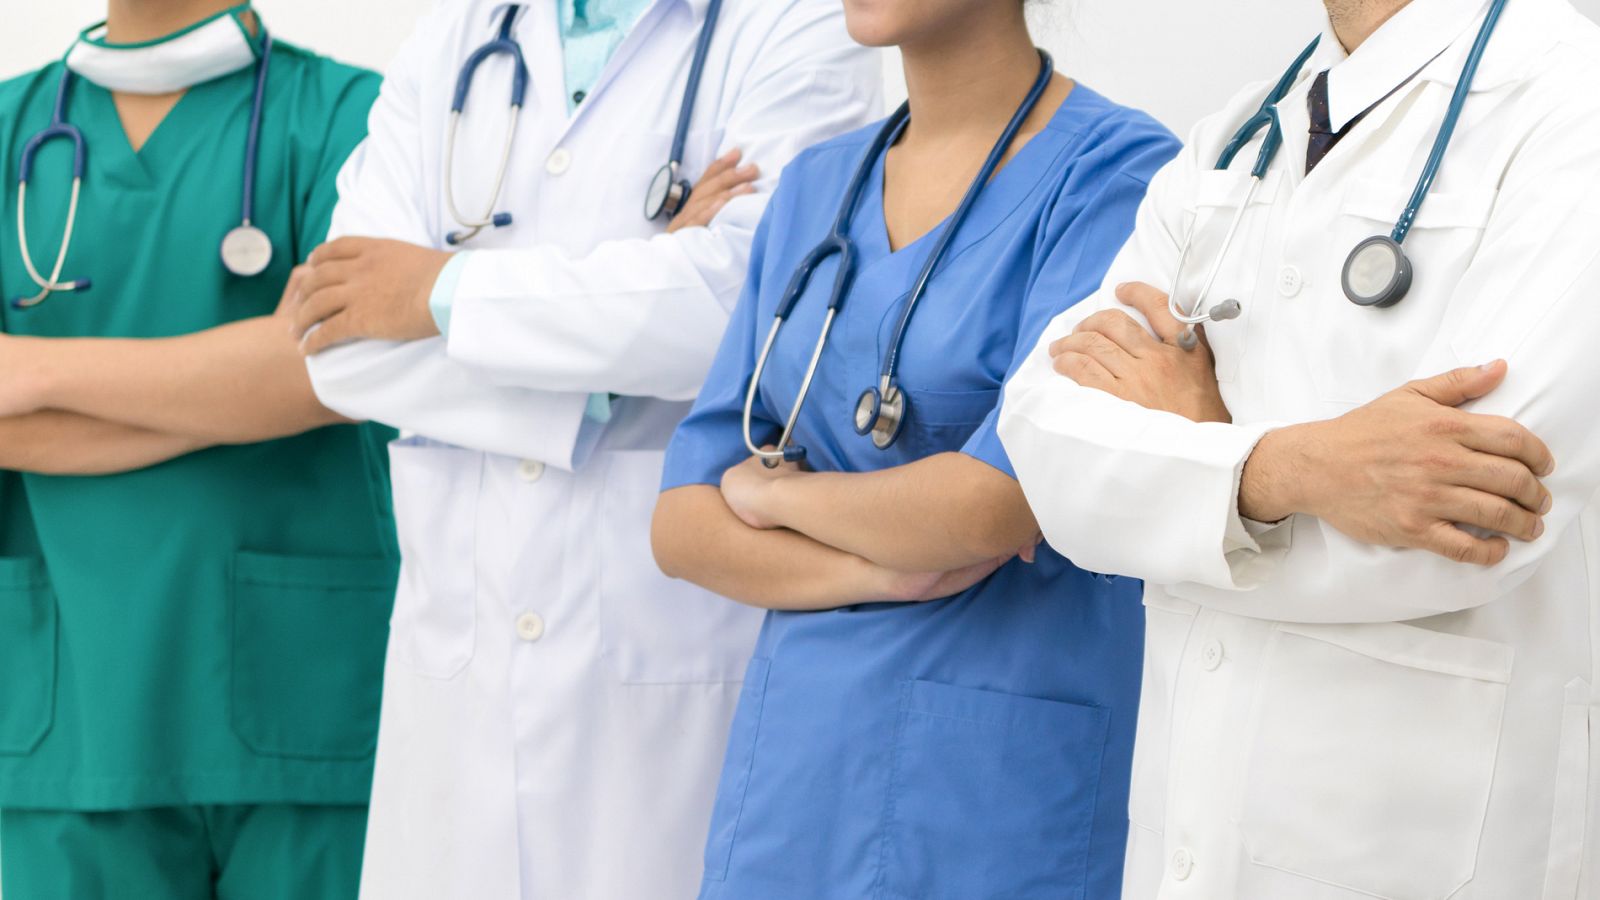 Bajan las agresiones a personal sanitario pero crecen las intimidaciones a doctoras